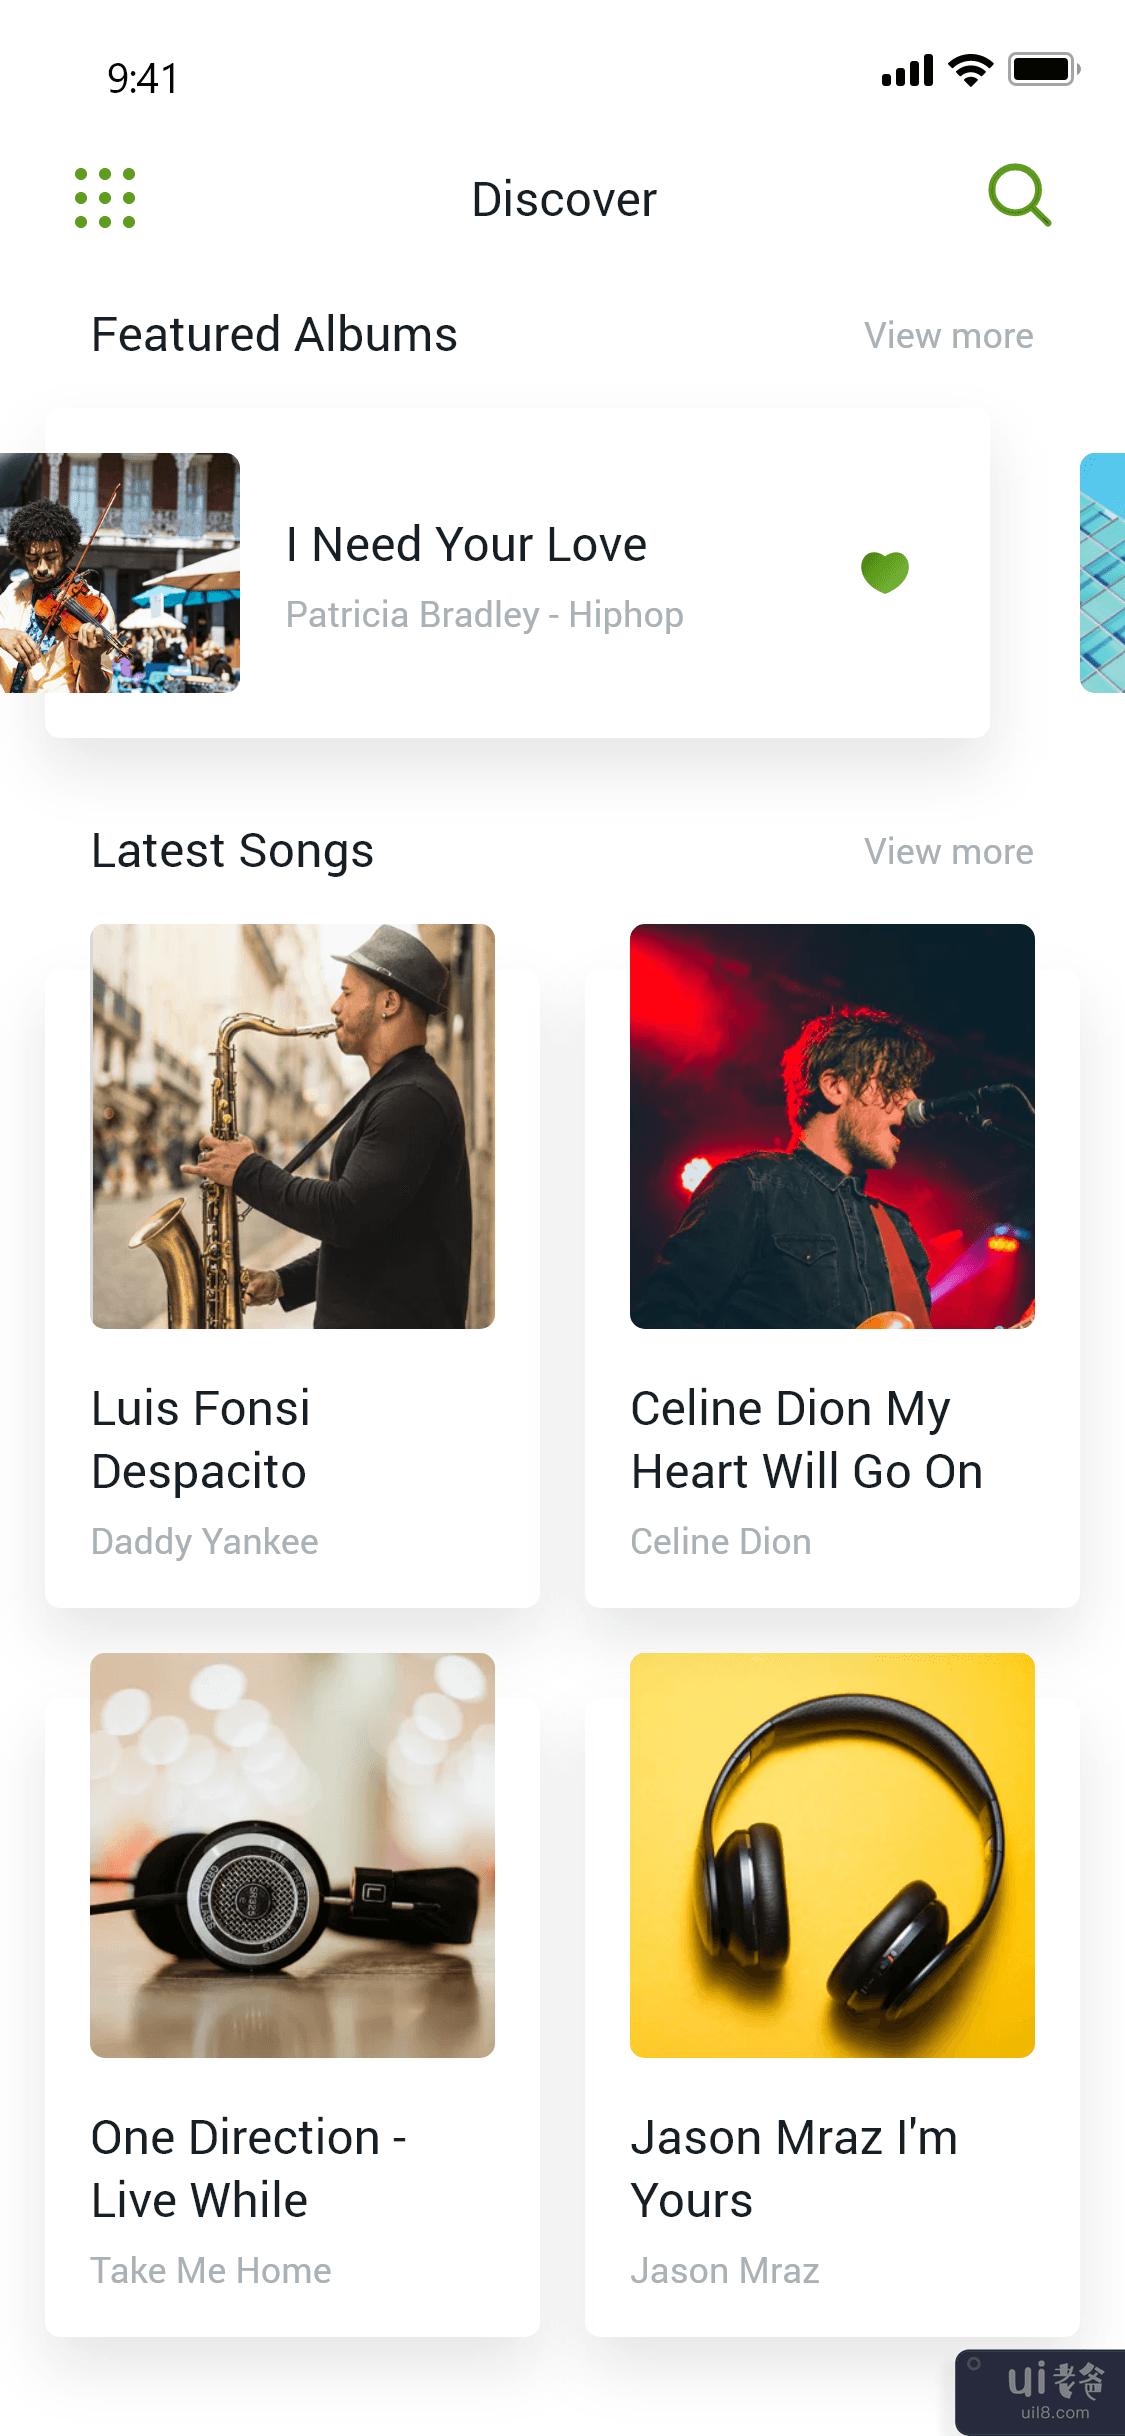 音乐应用 - 音乐应用 UI 设计模板(Music App - Music App UI Design Template)插图